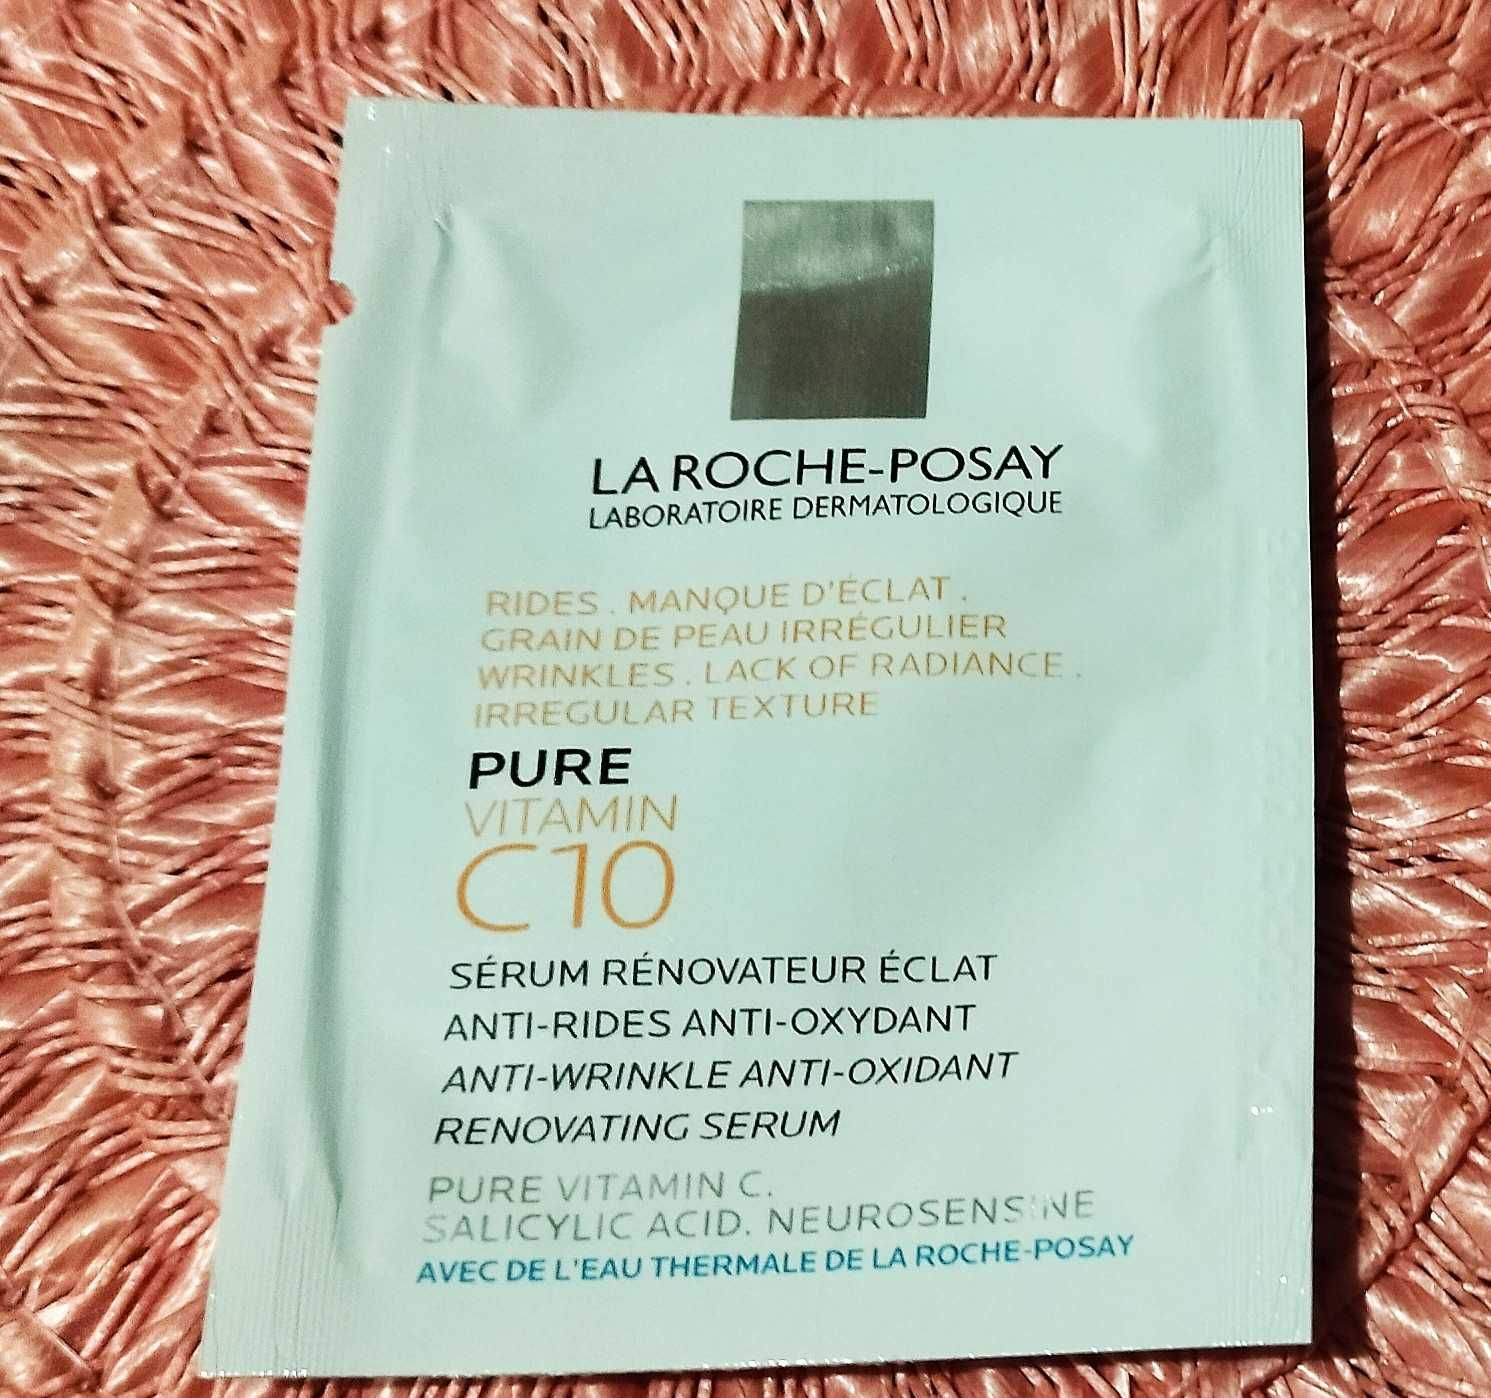 La Roche-Posay Pure Vitamin C10 serum do twarzy